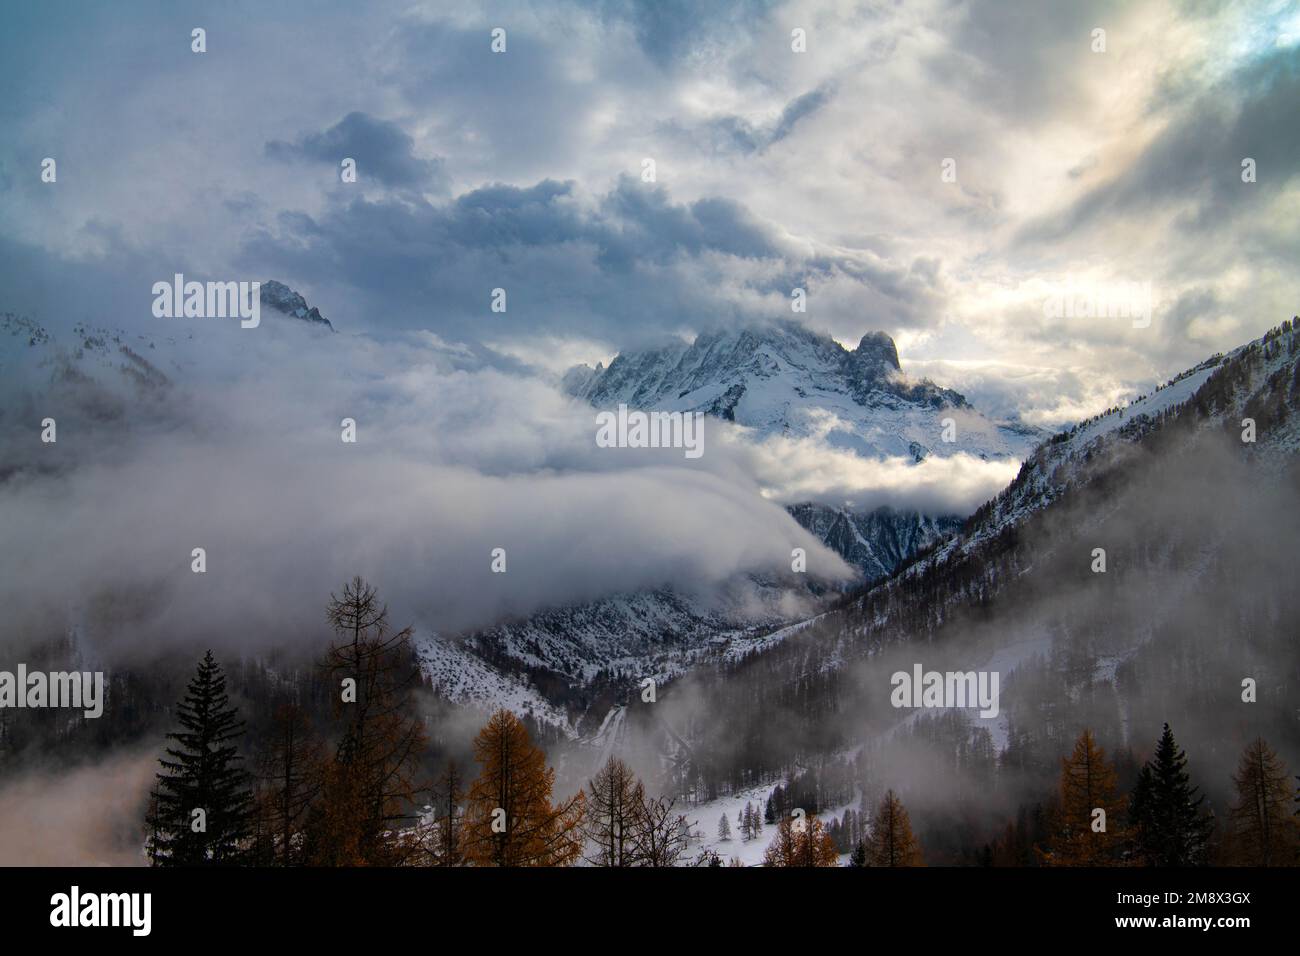 French Culture,Ski,European Alps,Snow,Snowcapped Mountain,Cloud - Sky,Aiguille de Midi,Aiguille de Loriaz,Mont Blanc Massif,Mont Blanc,Chamonix,Chamon Stock Photo